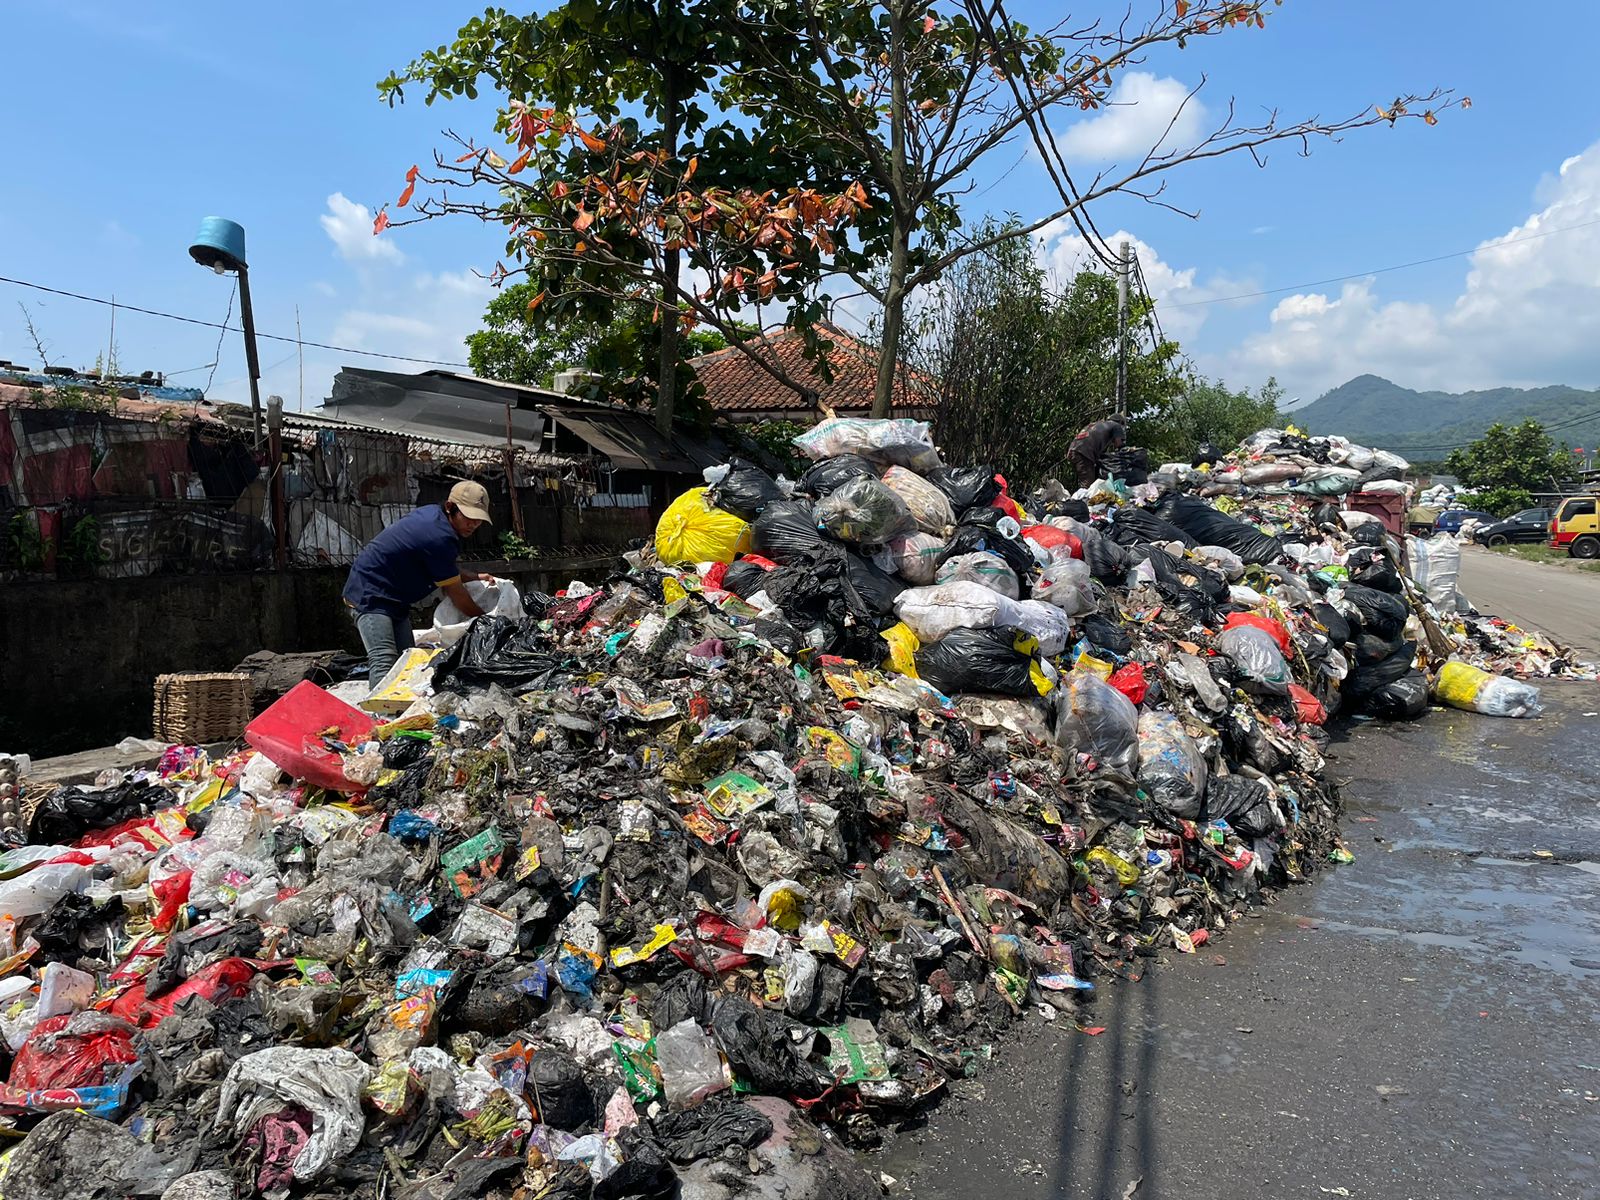 Kawasan Pasar Baleendah, Kabupaten Bandung kini menjadi tumpukan sampah lantaran tak terangkut sejak Januari 2023 lalu. (AGI/JABAR EKSPRES)